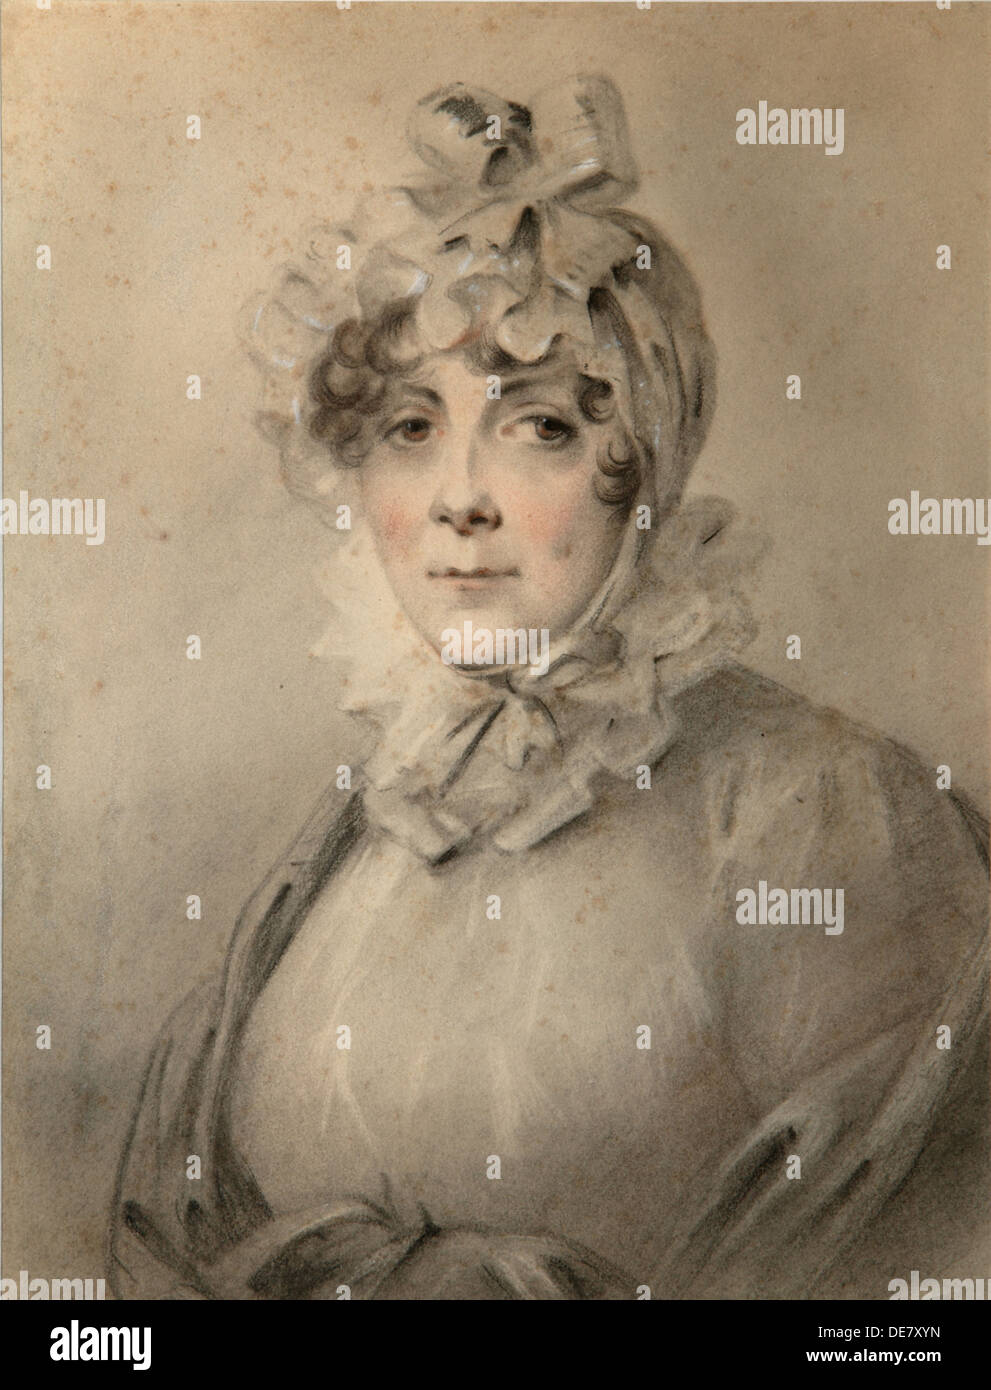 Retrato de la Condesa Anastasia Nikolaevna Shcherbatova (?-1810), née Dolgorukova. Artista: Molinari, ALEXANDER (1772-1831) Foto de stock